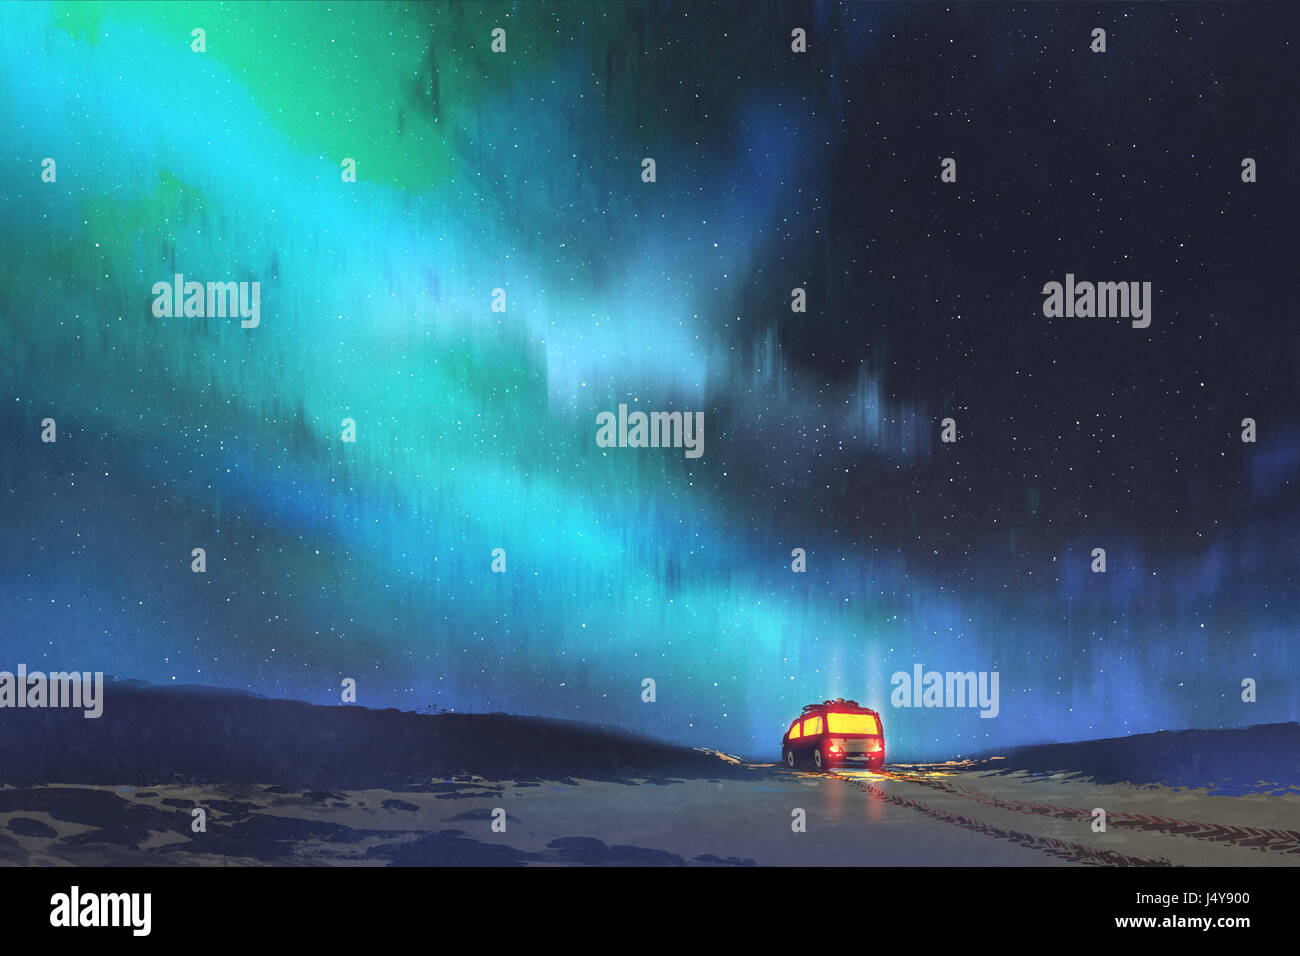 Nachtlandschaft des van parkte vor einem wunderschönen Sternenhimmel mit digitaler Kunststil, Illustration, Malerei Stockfoto